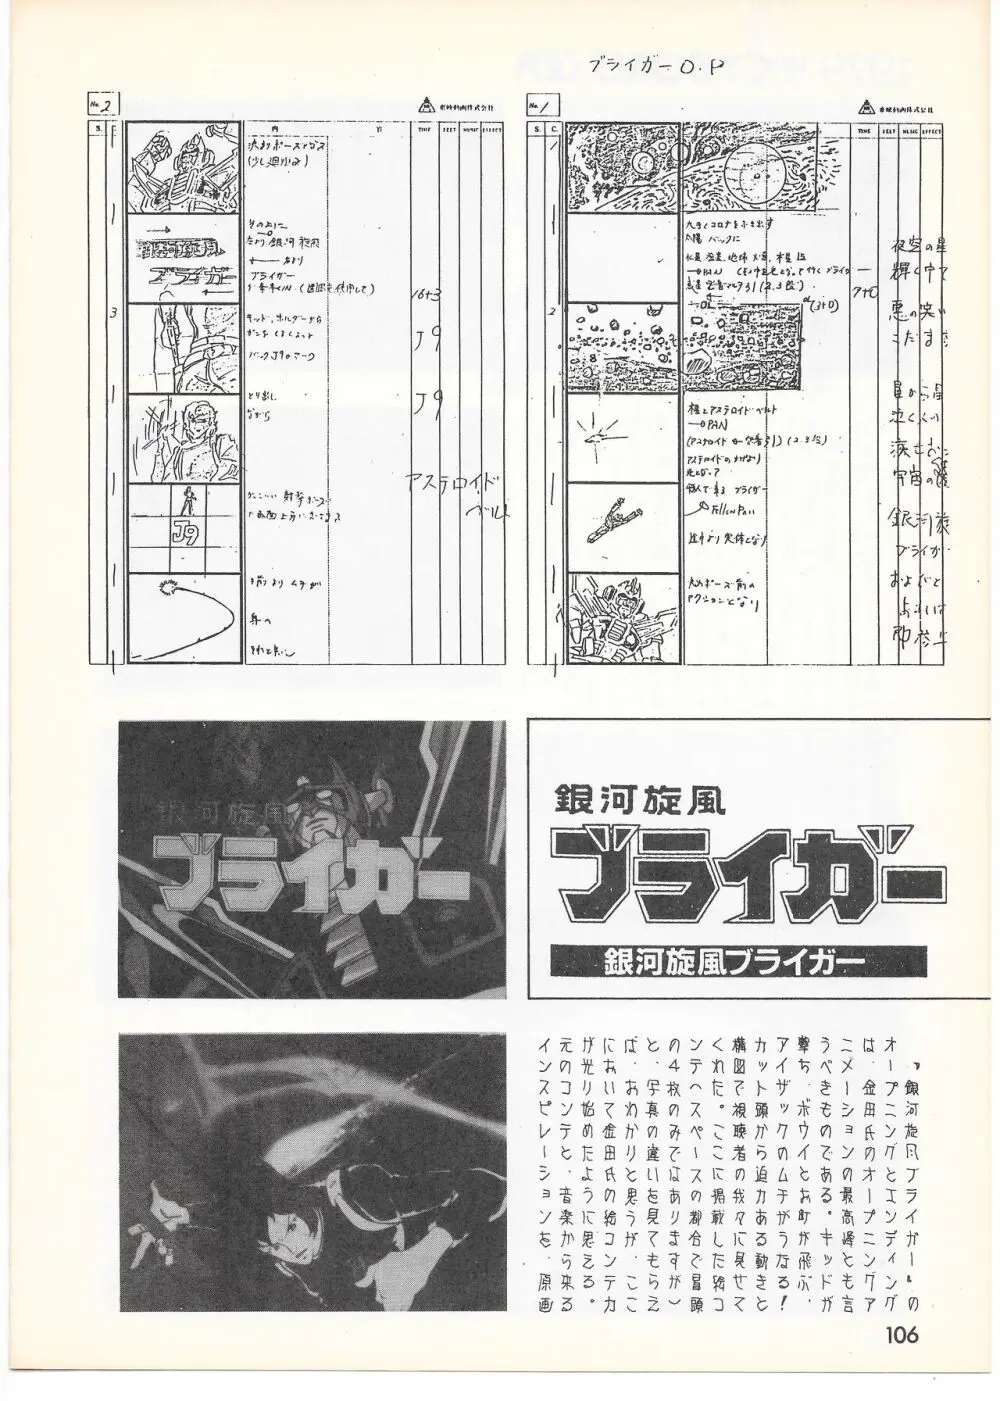 THE ANIMATOR 1 金田伊功特集号 101ページ